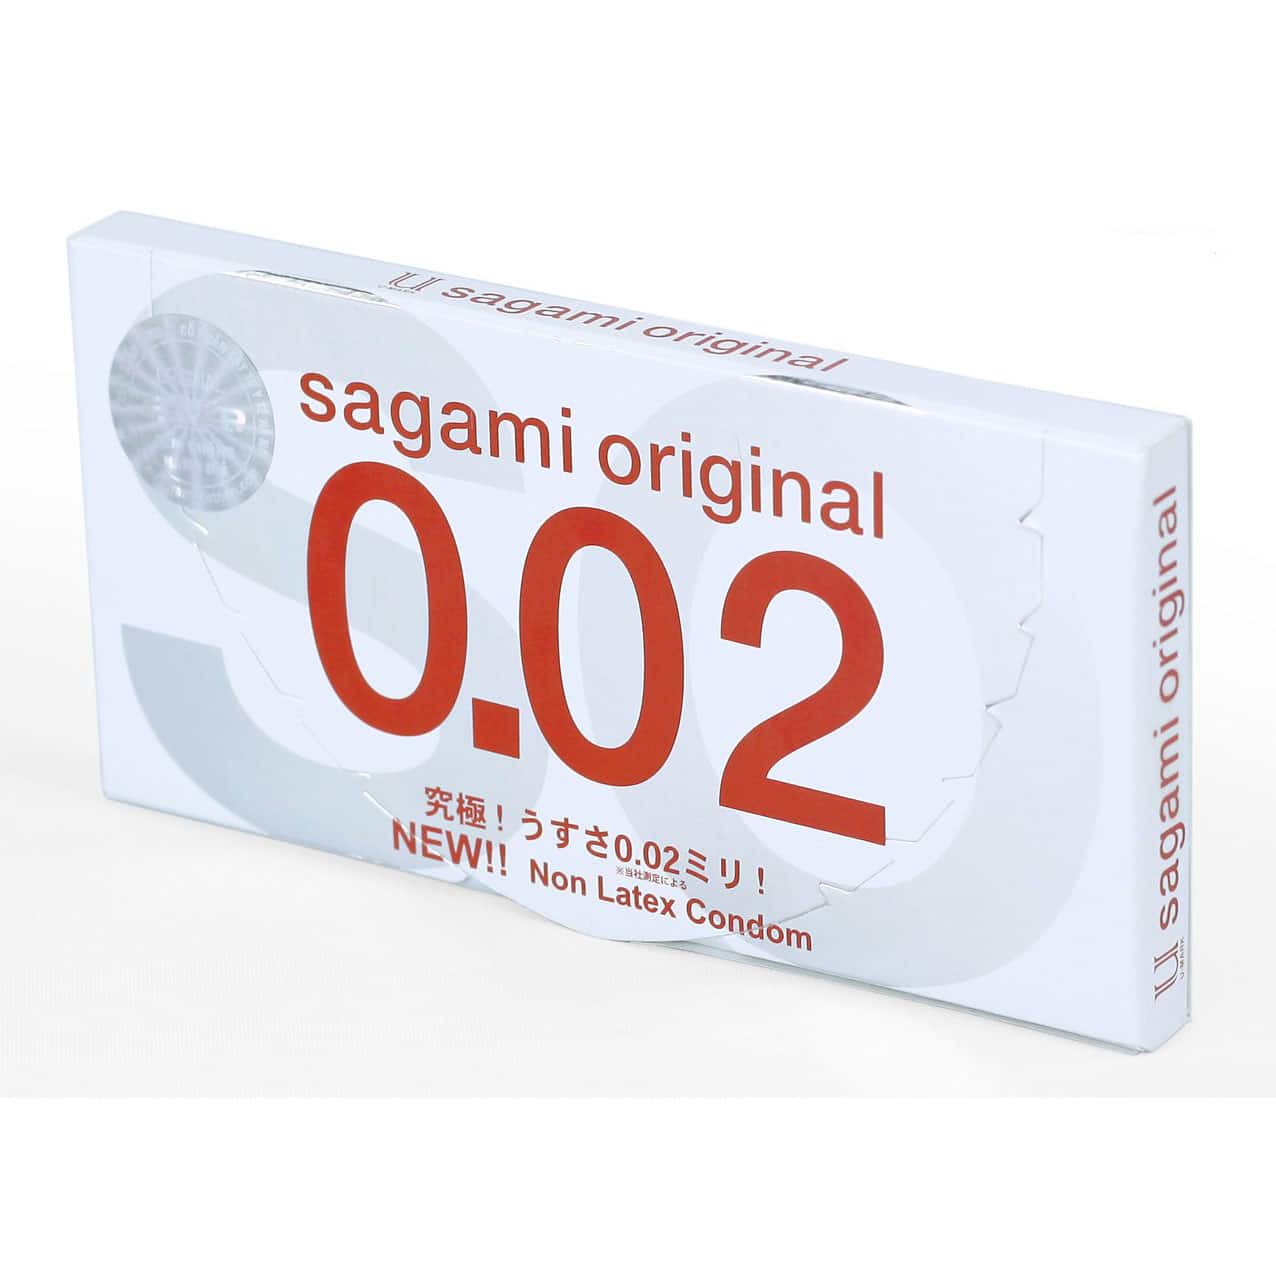 Bao cao su Sagami Original